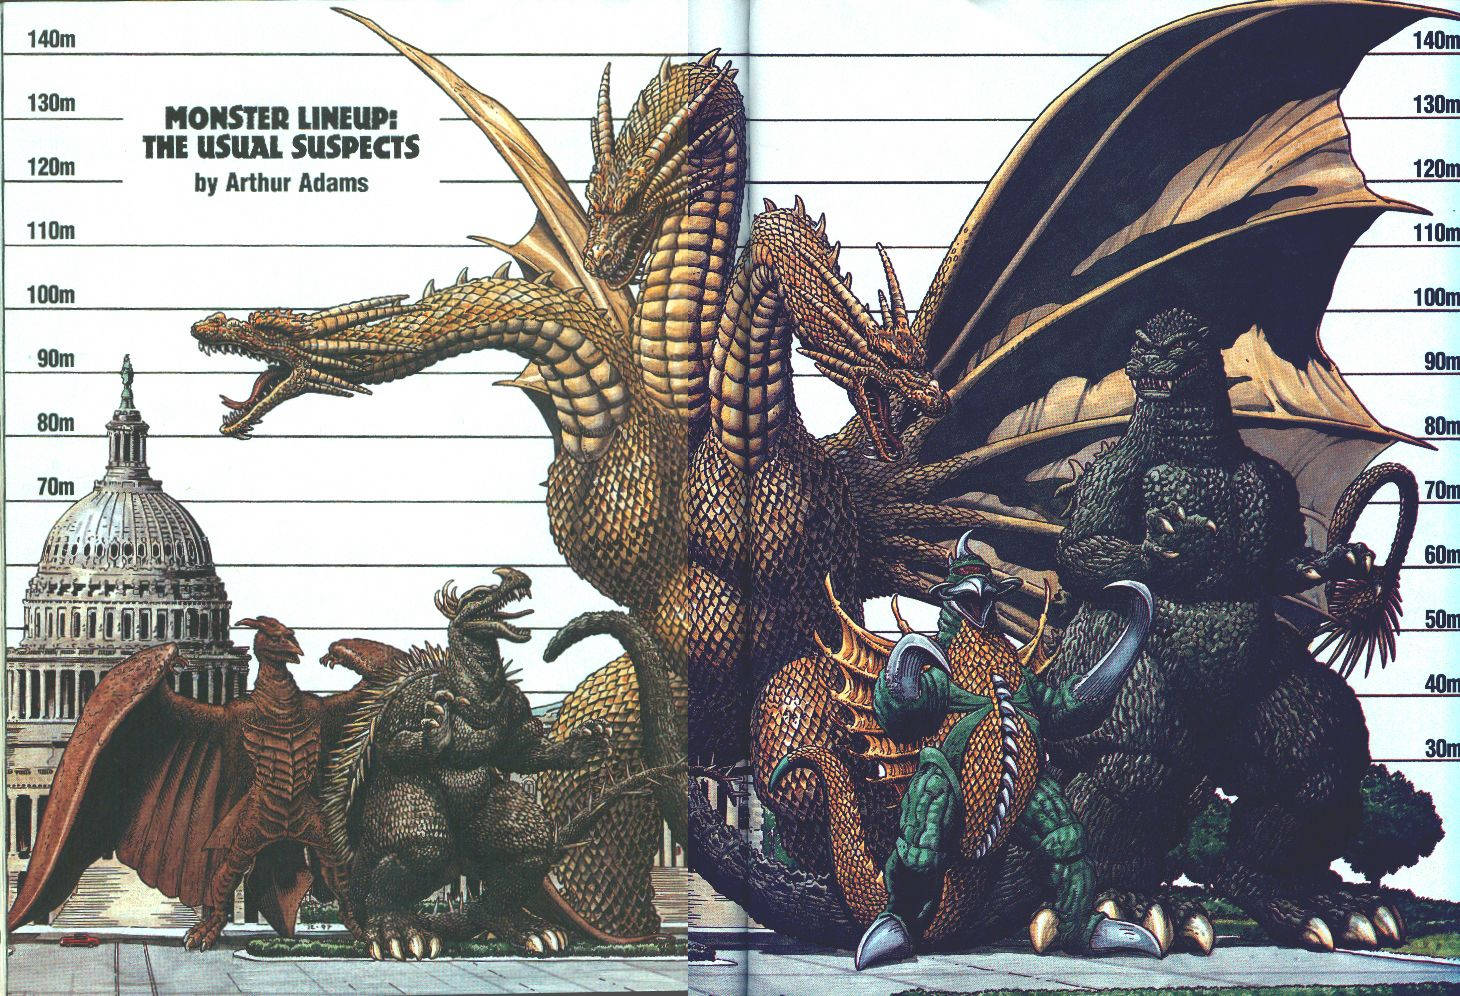 1460X996 Godzilla Wallpaper and Background